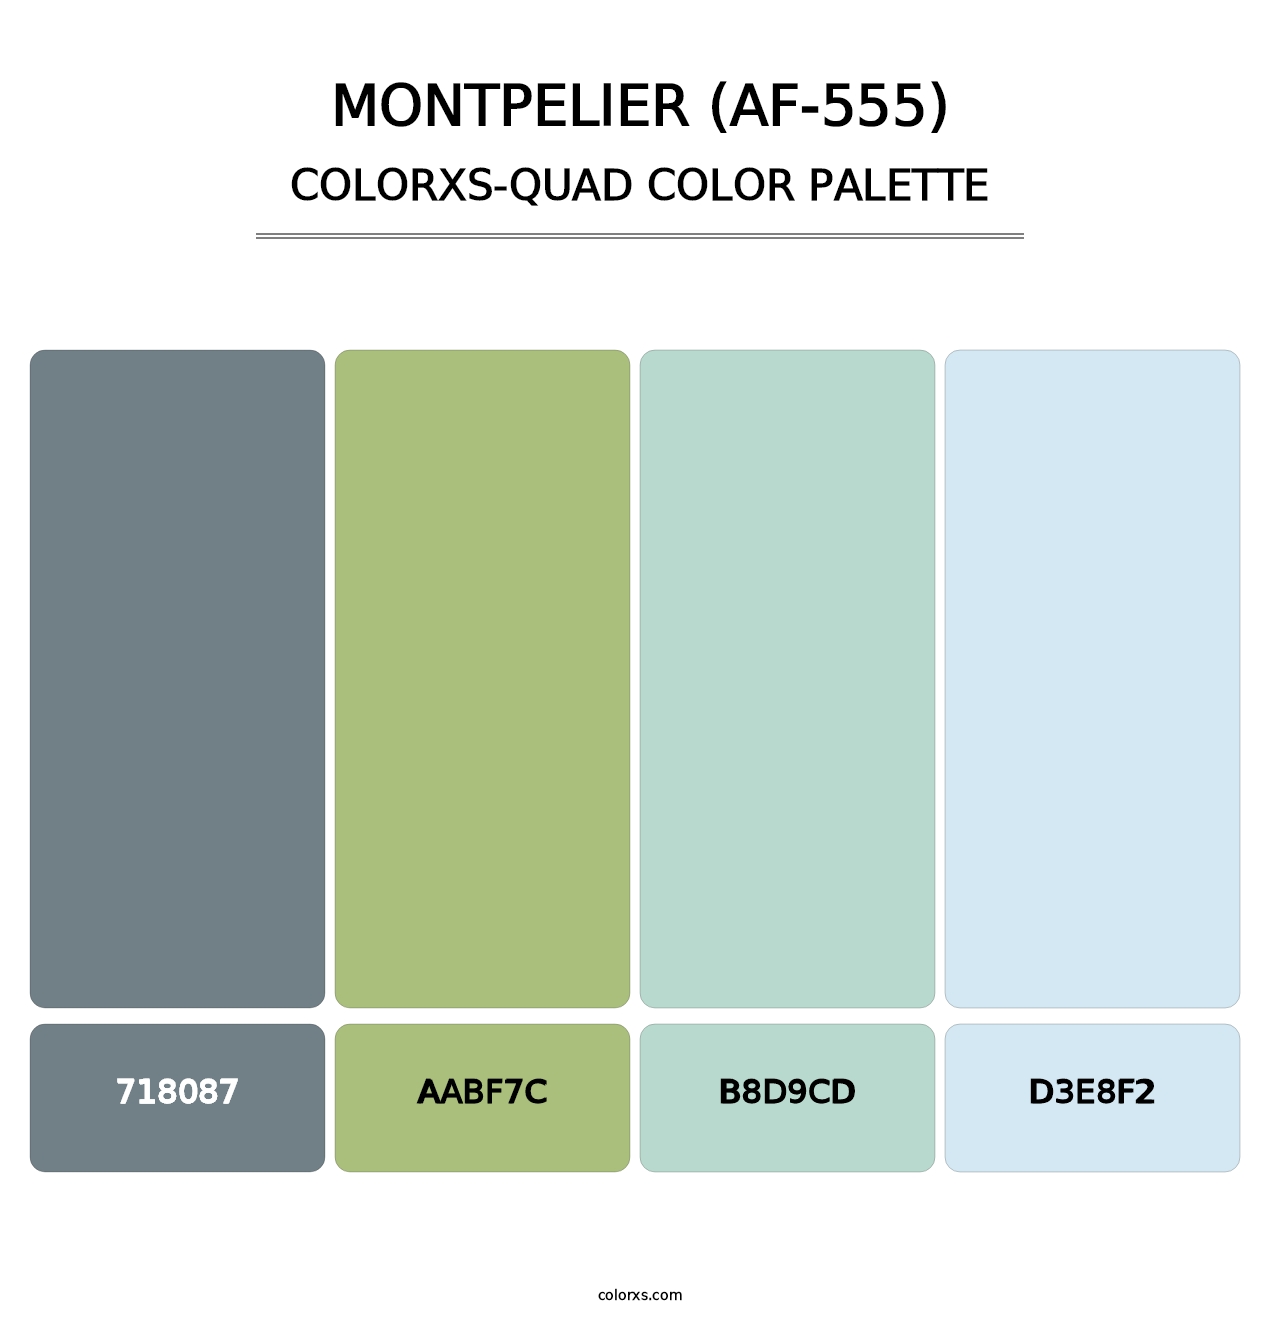 Montpelier (AF-555) - Colorxs Quad Palette